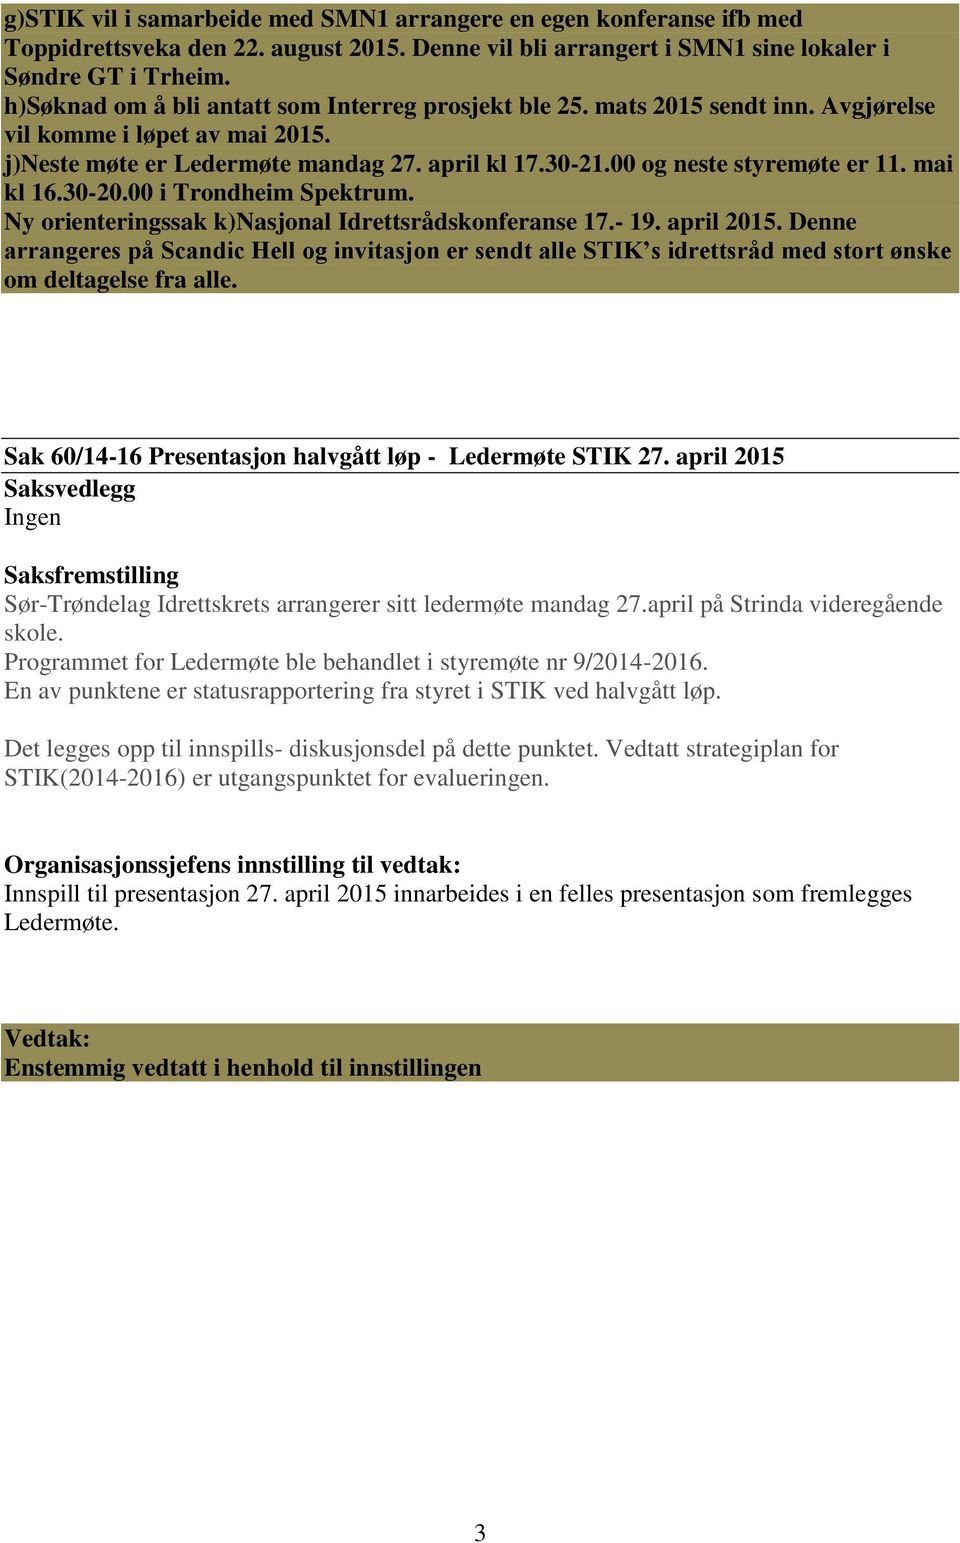 00 og neste styremøte er 11. mai kl 16.30-20.00 i Trondheim Spektrum. Ny orienteringssak k)nasjonal Idrettsrådskonferanse 17.- 19. april 2015.